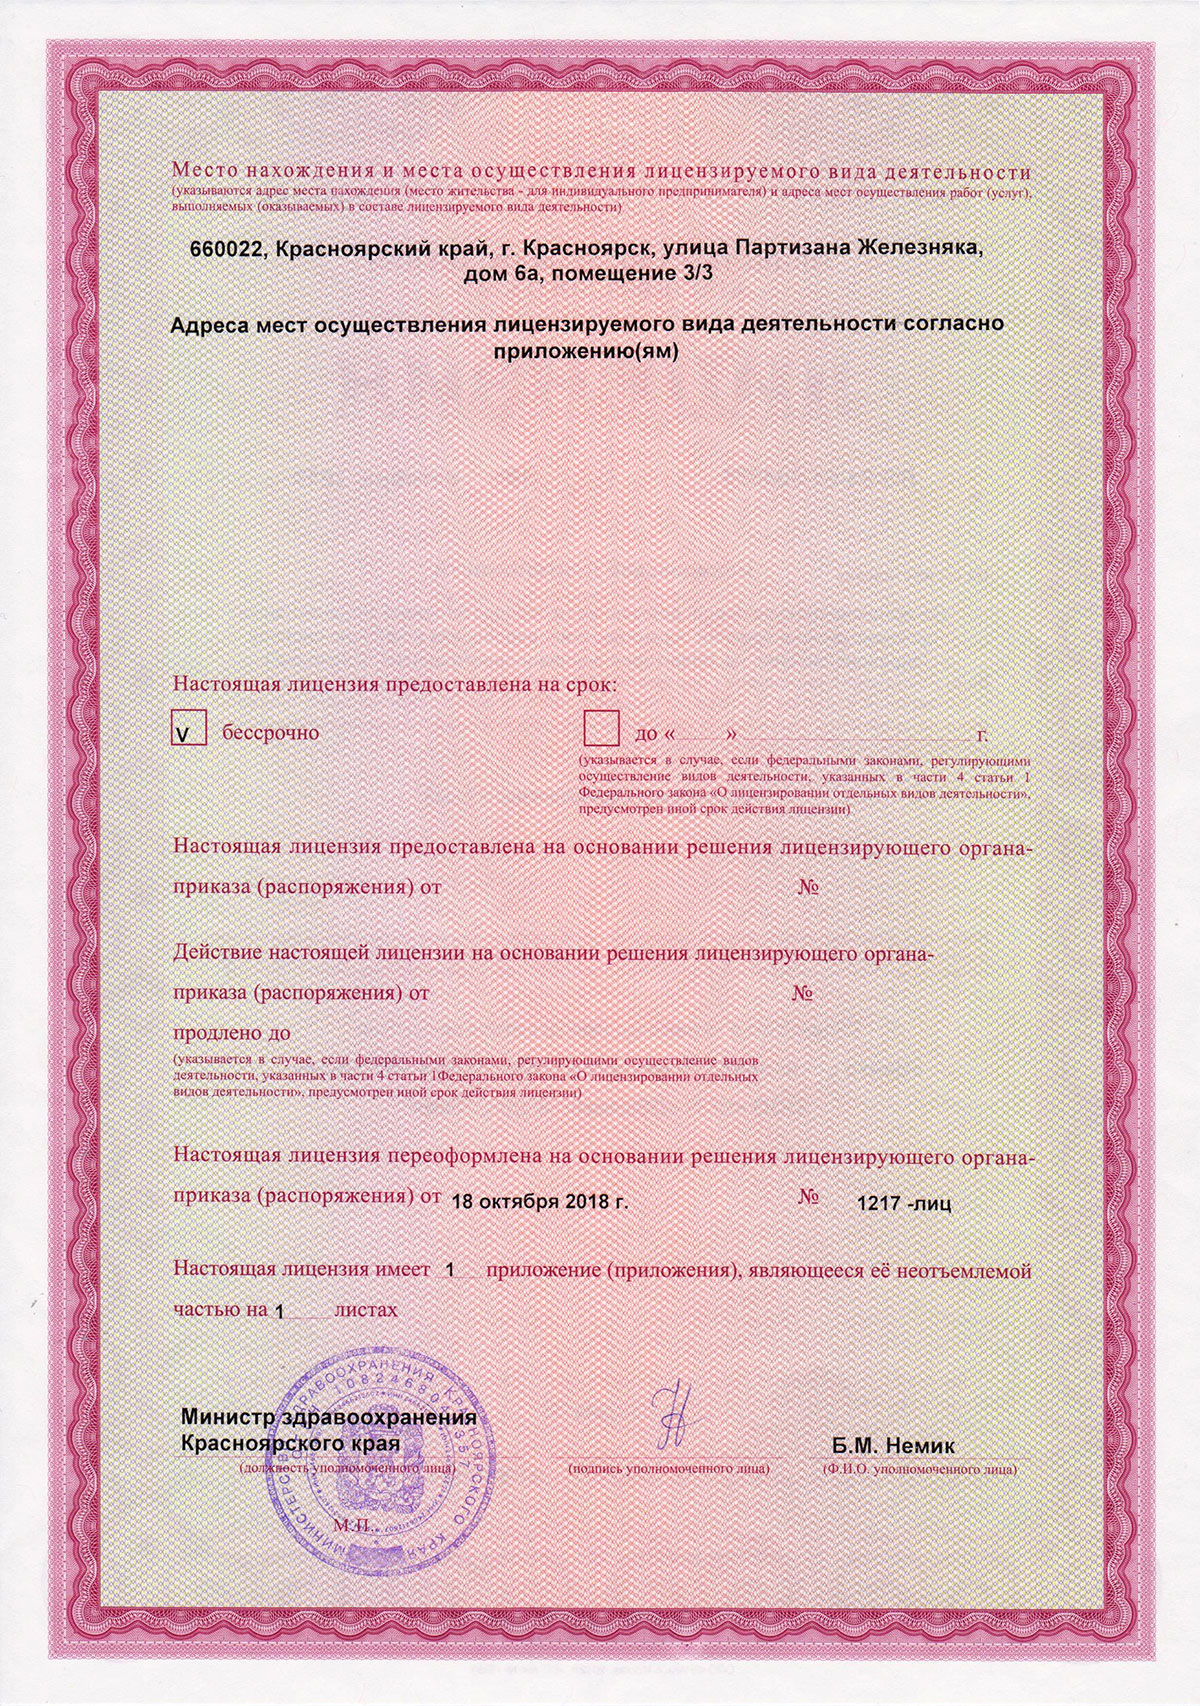 Министерство здравоохранения Красноярского края - Лицензия